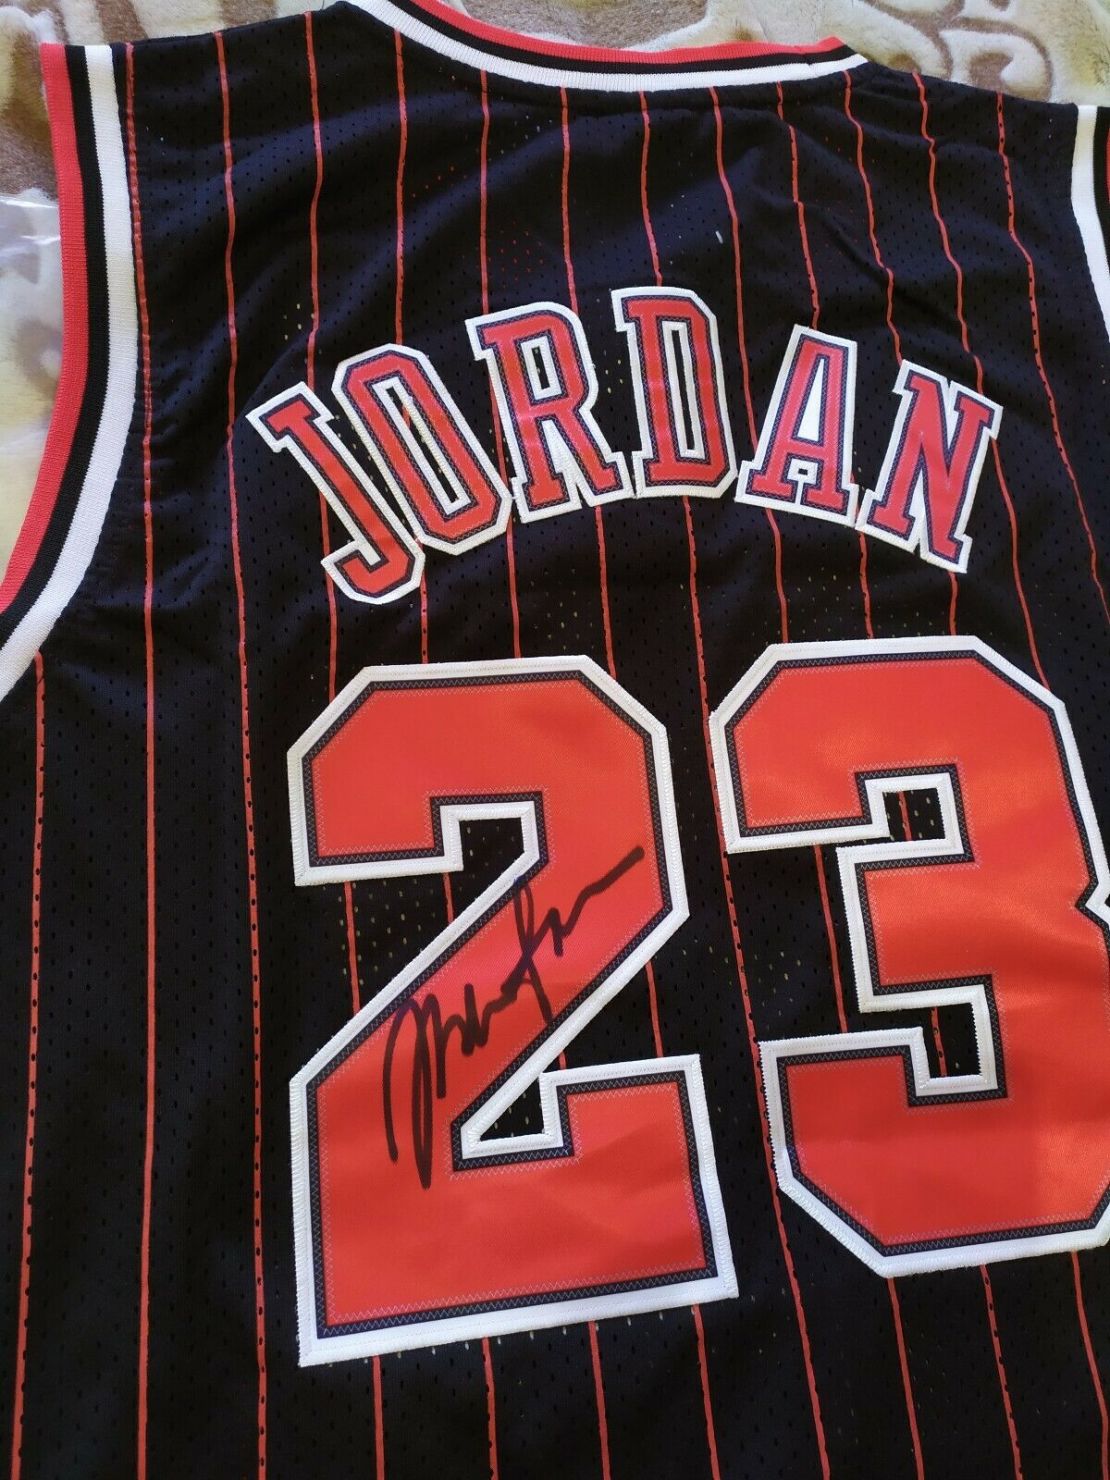 El clásico jersey negro y rojo autografiado con el número 23 de Jordan (Foto cortesía eBay).